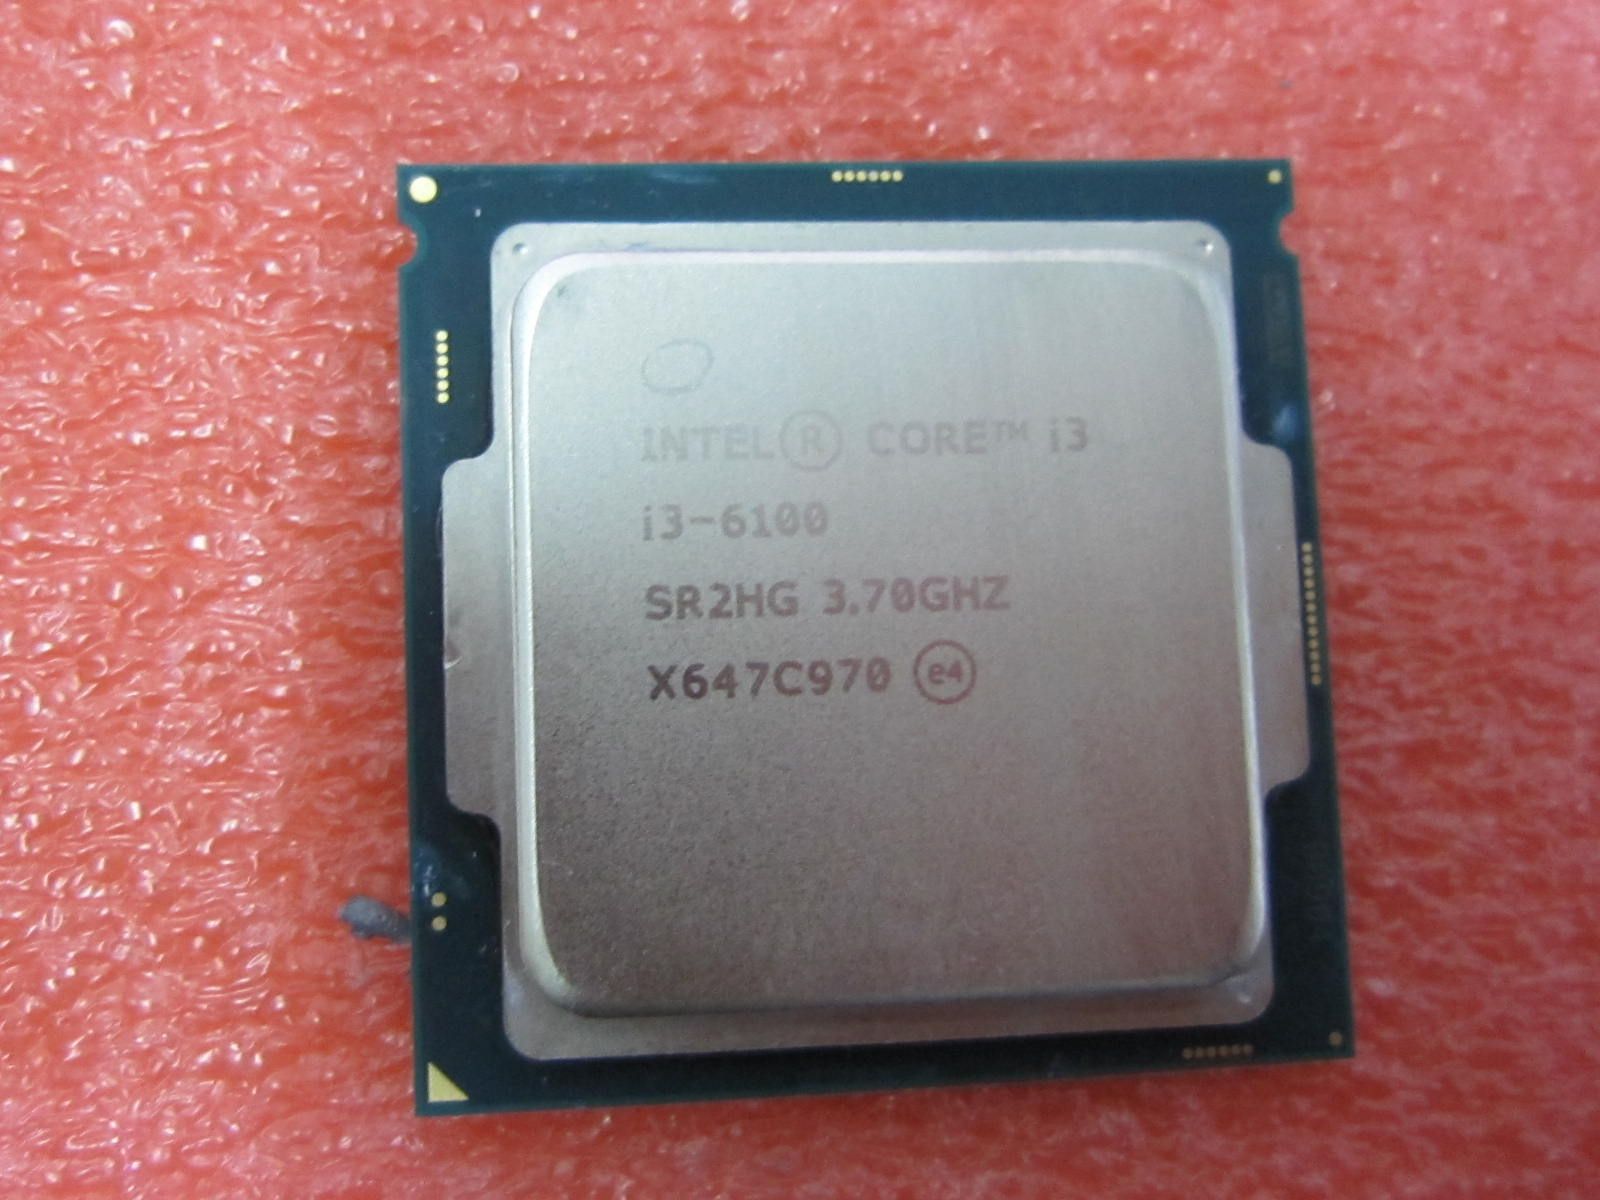 新品本物保証 Intel Core i3-6100 3.7GHz 4セット H9Ryl-m78854390879 